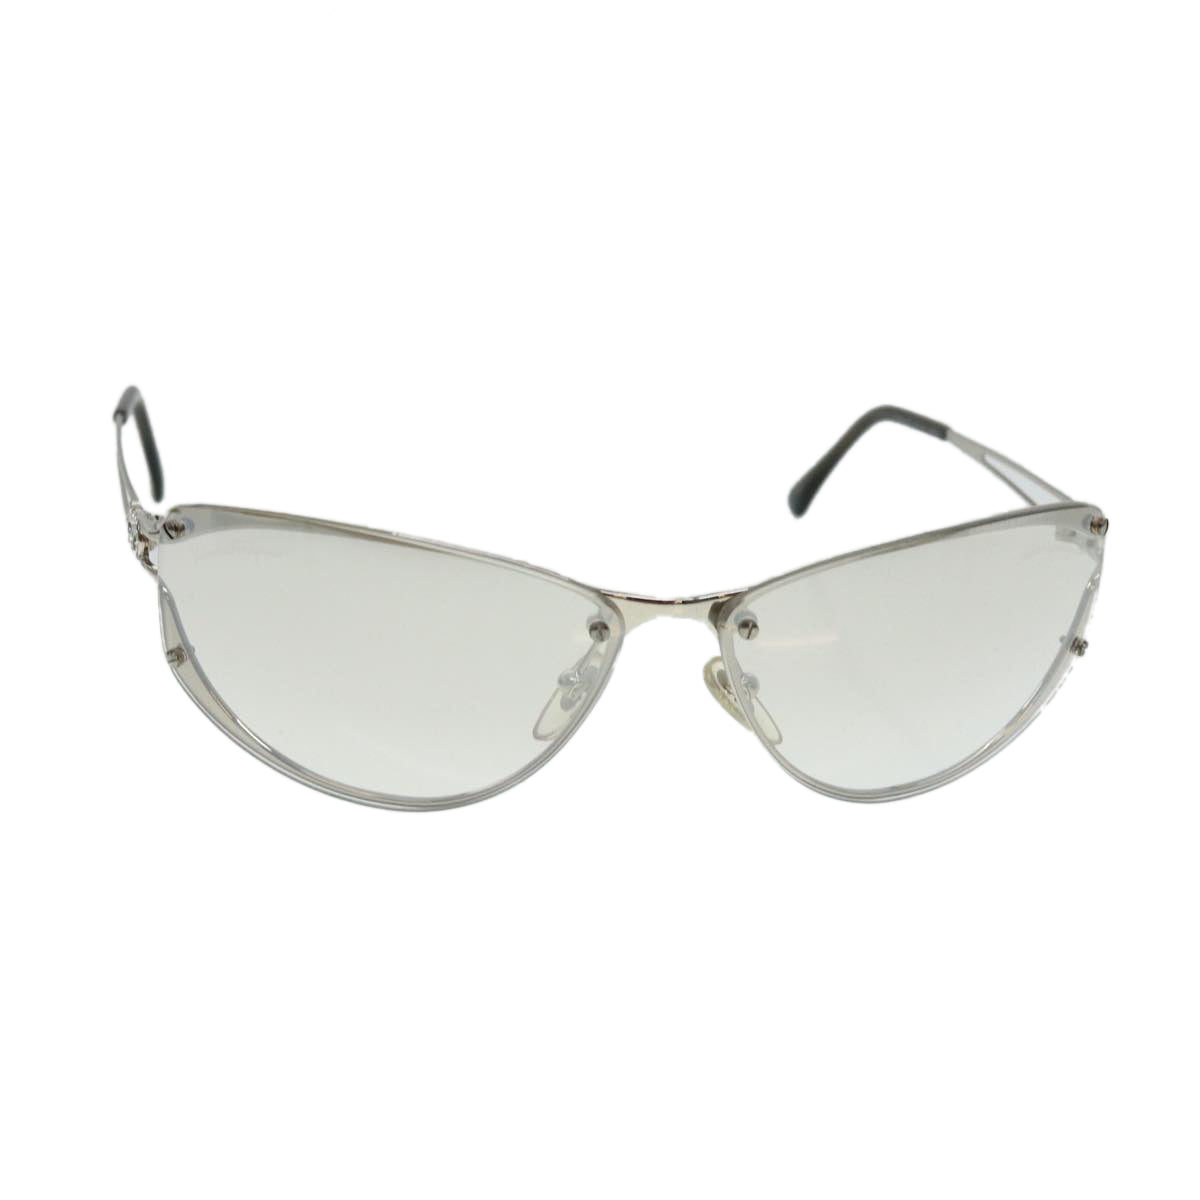 Salvatore Ferragamo Sunglasses Silver Auth 37977